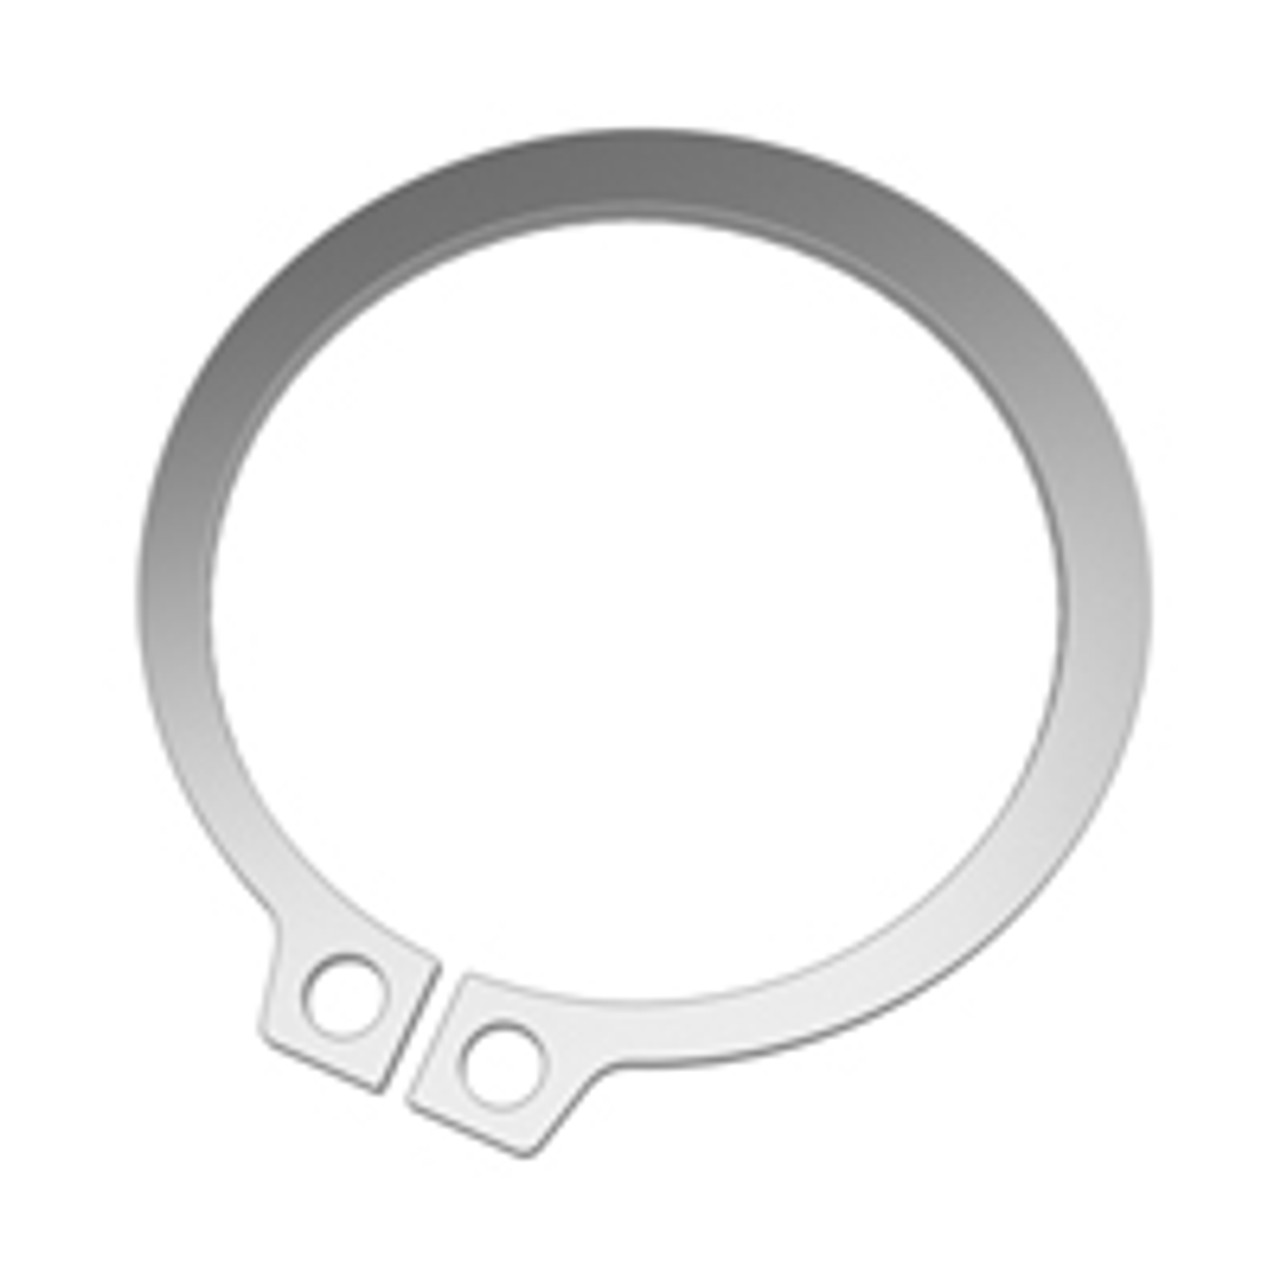 External SAE Stainless Standard Retaining Ring  SH-0325-H